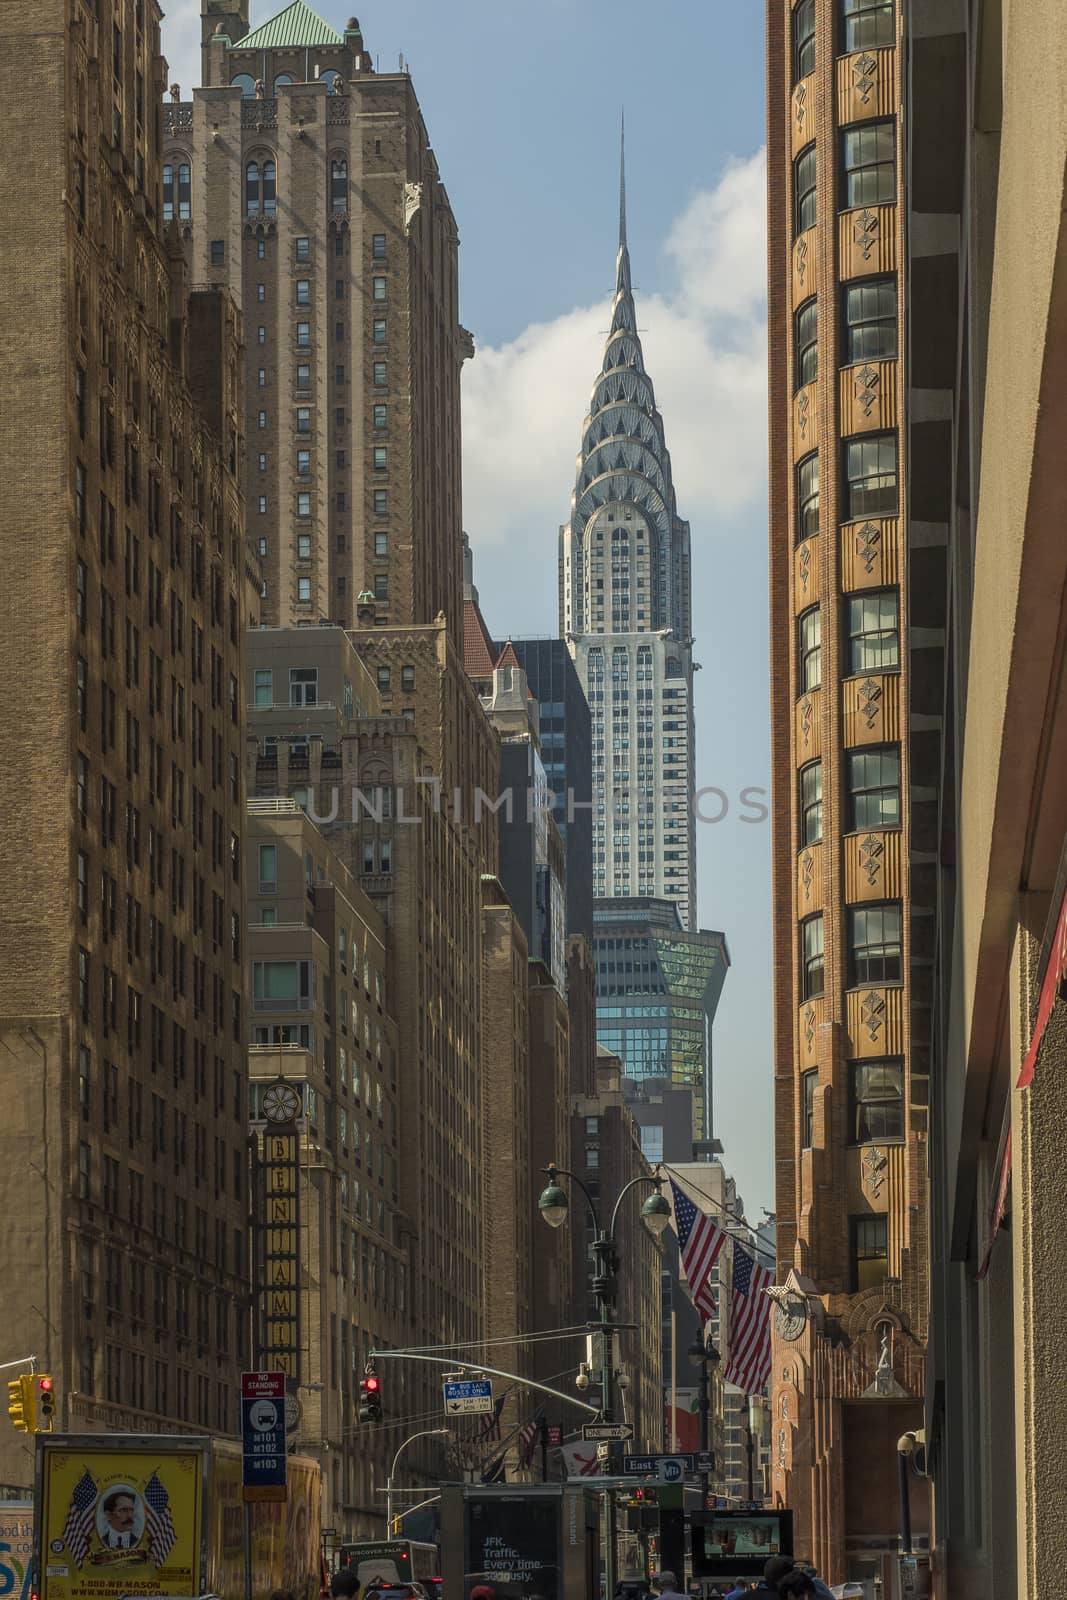 panoramic of new york